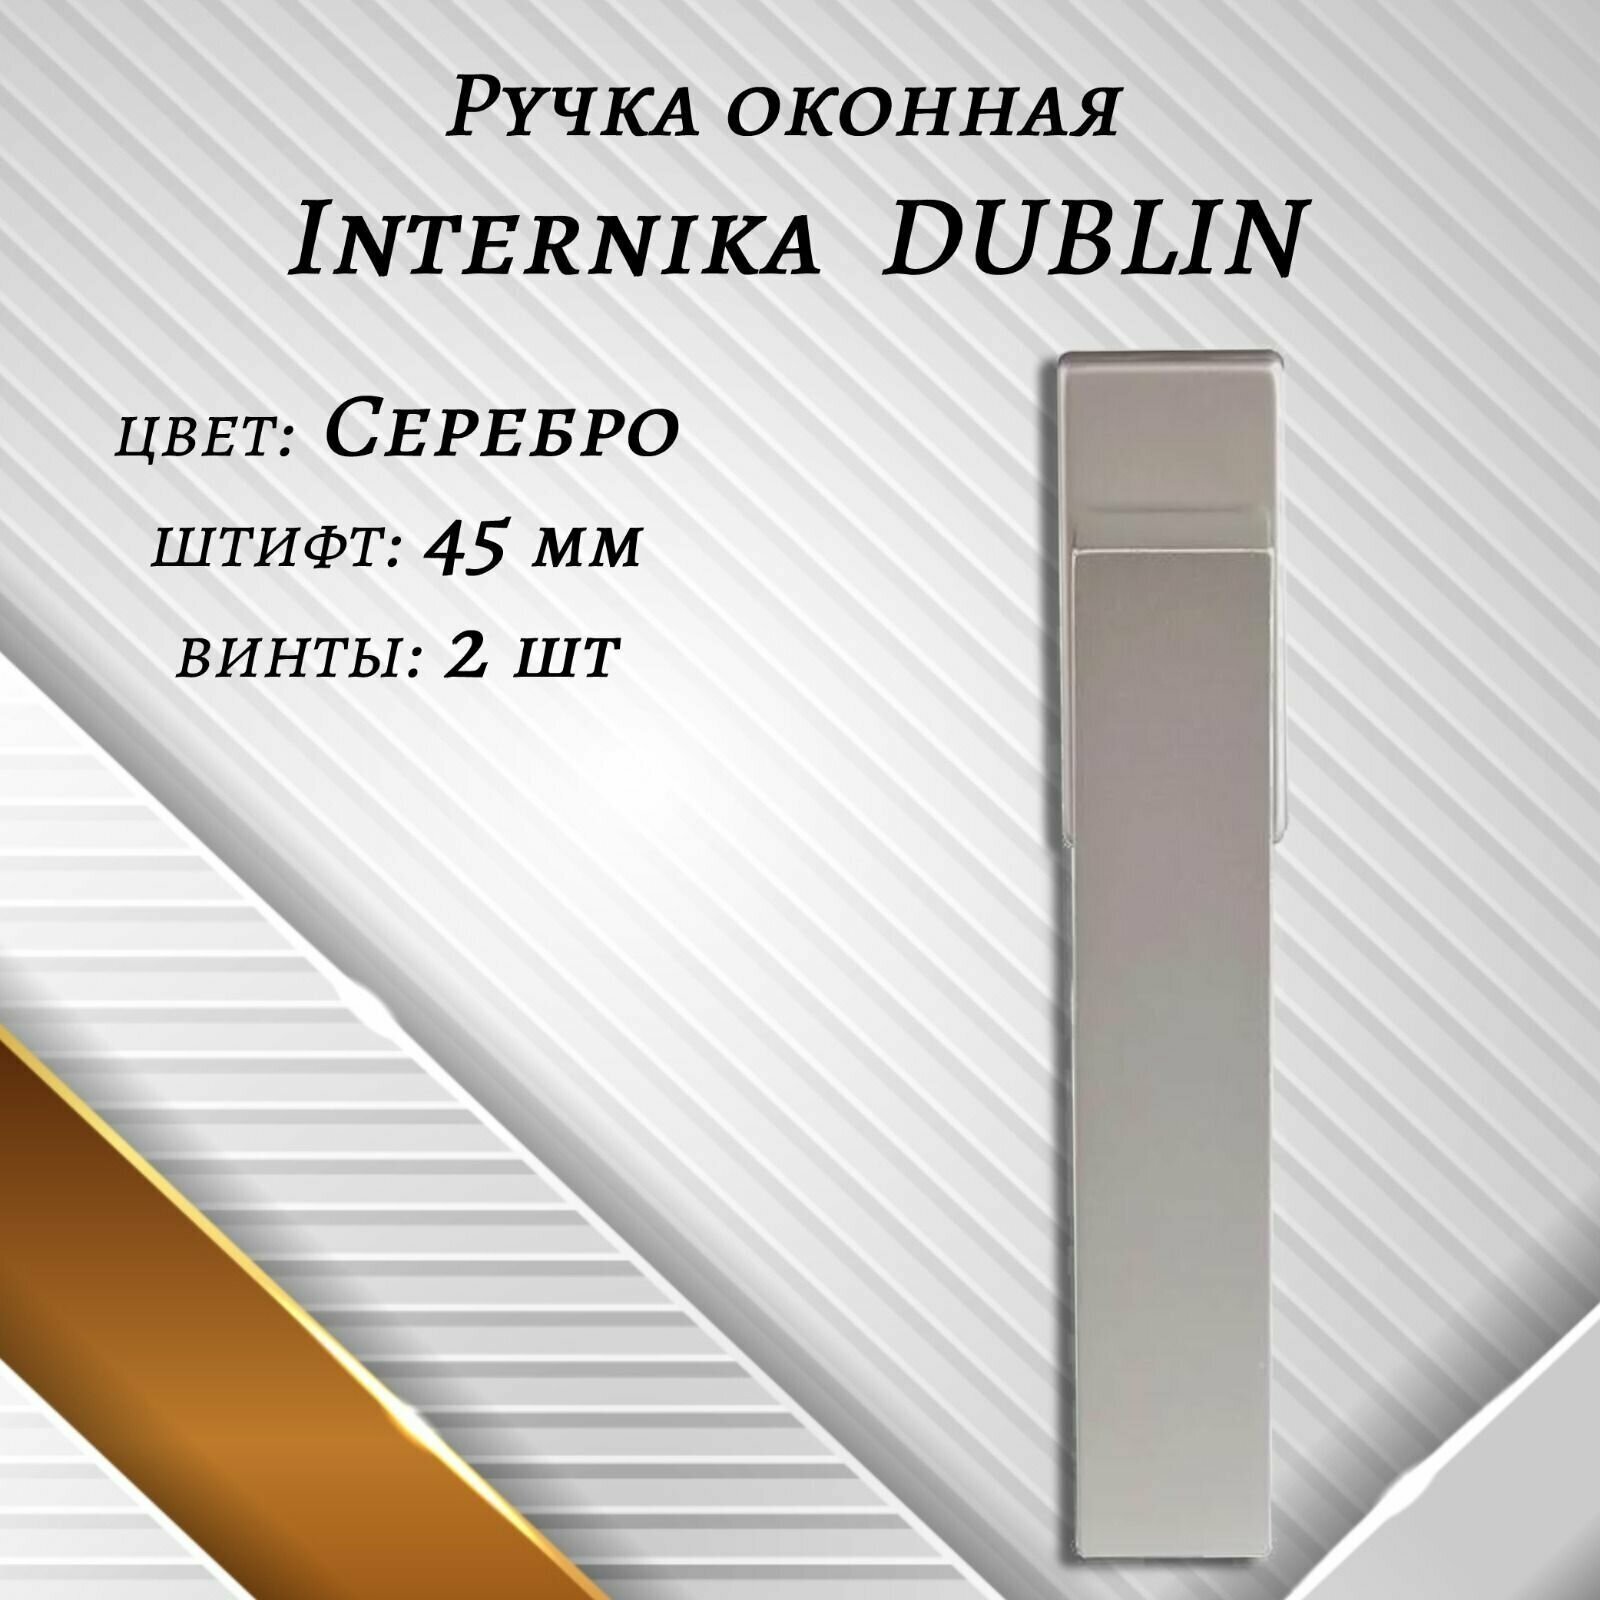 Ручка оконная Internika DUBLIN 45 мм - 4шт, алюминиевая, Серебро, винты в комплекте.